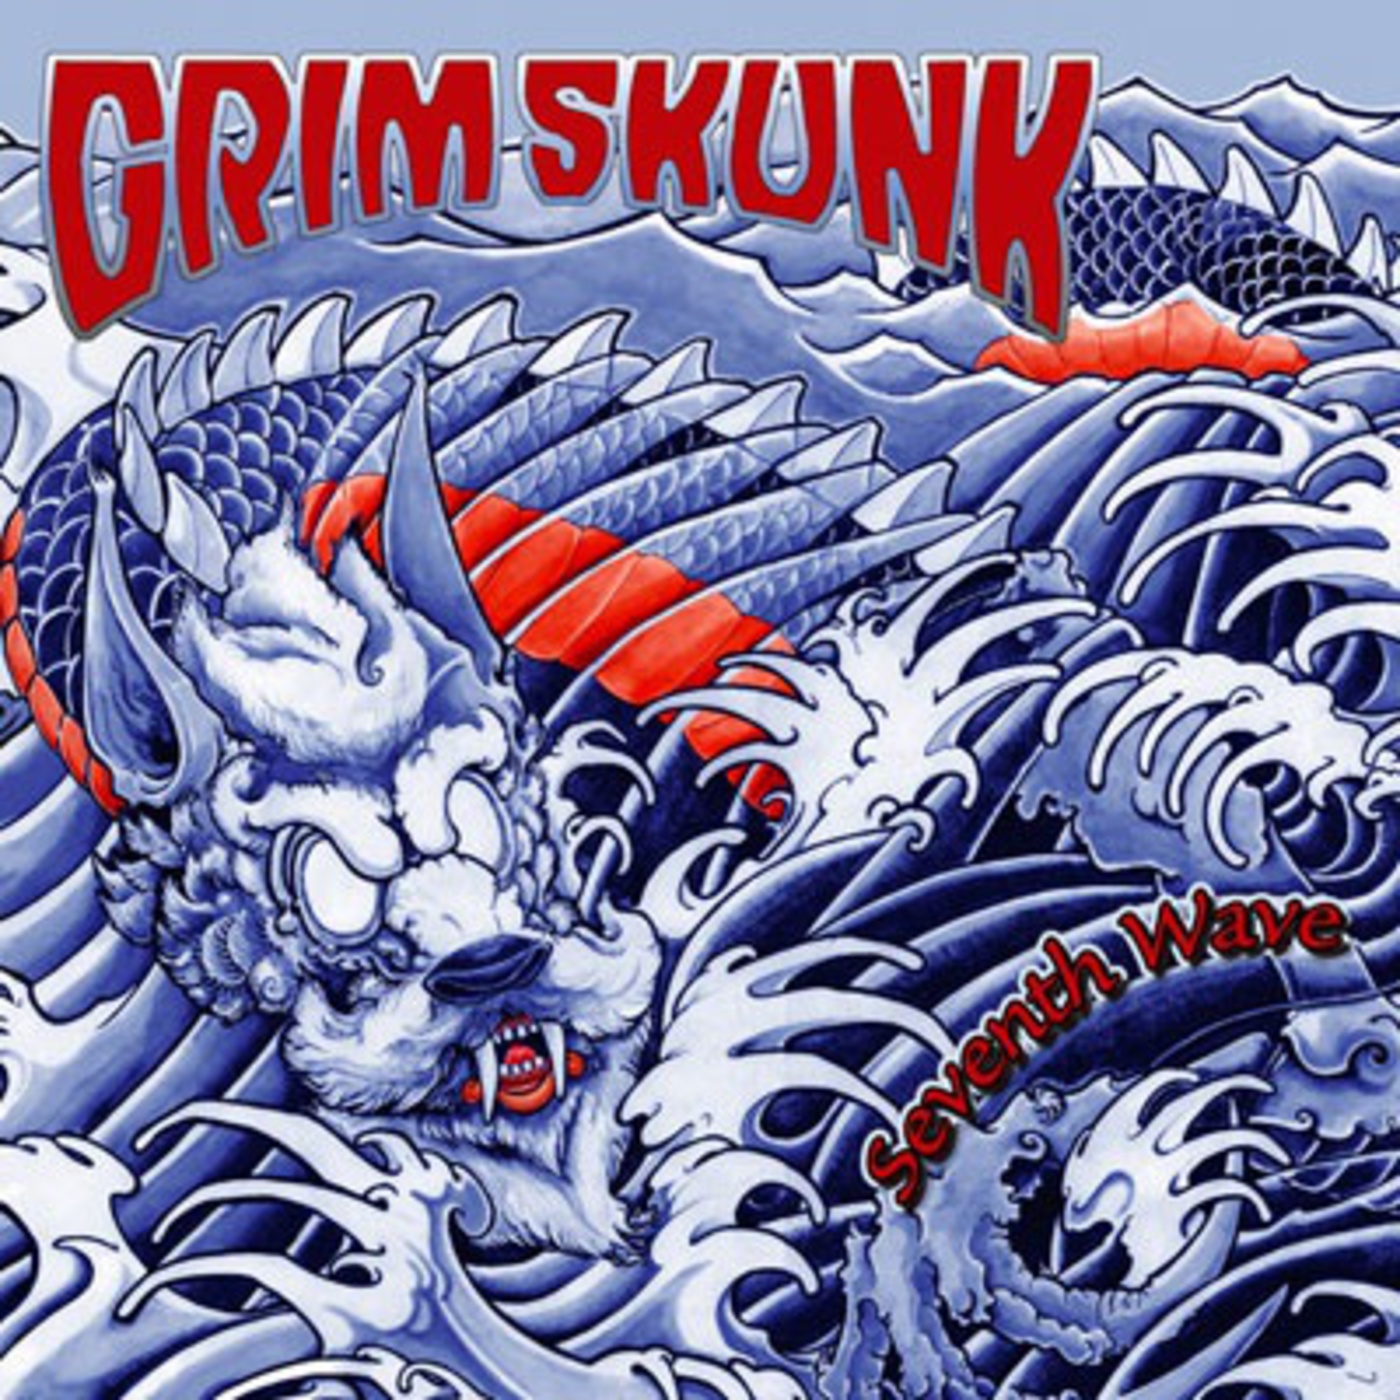 GrimSkunk - Seventh Wave